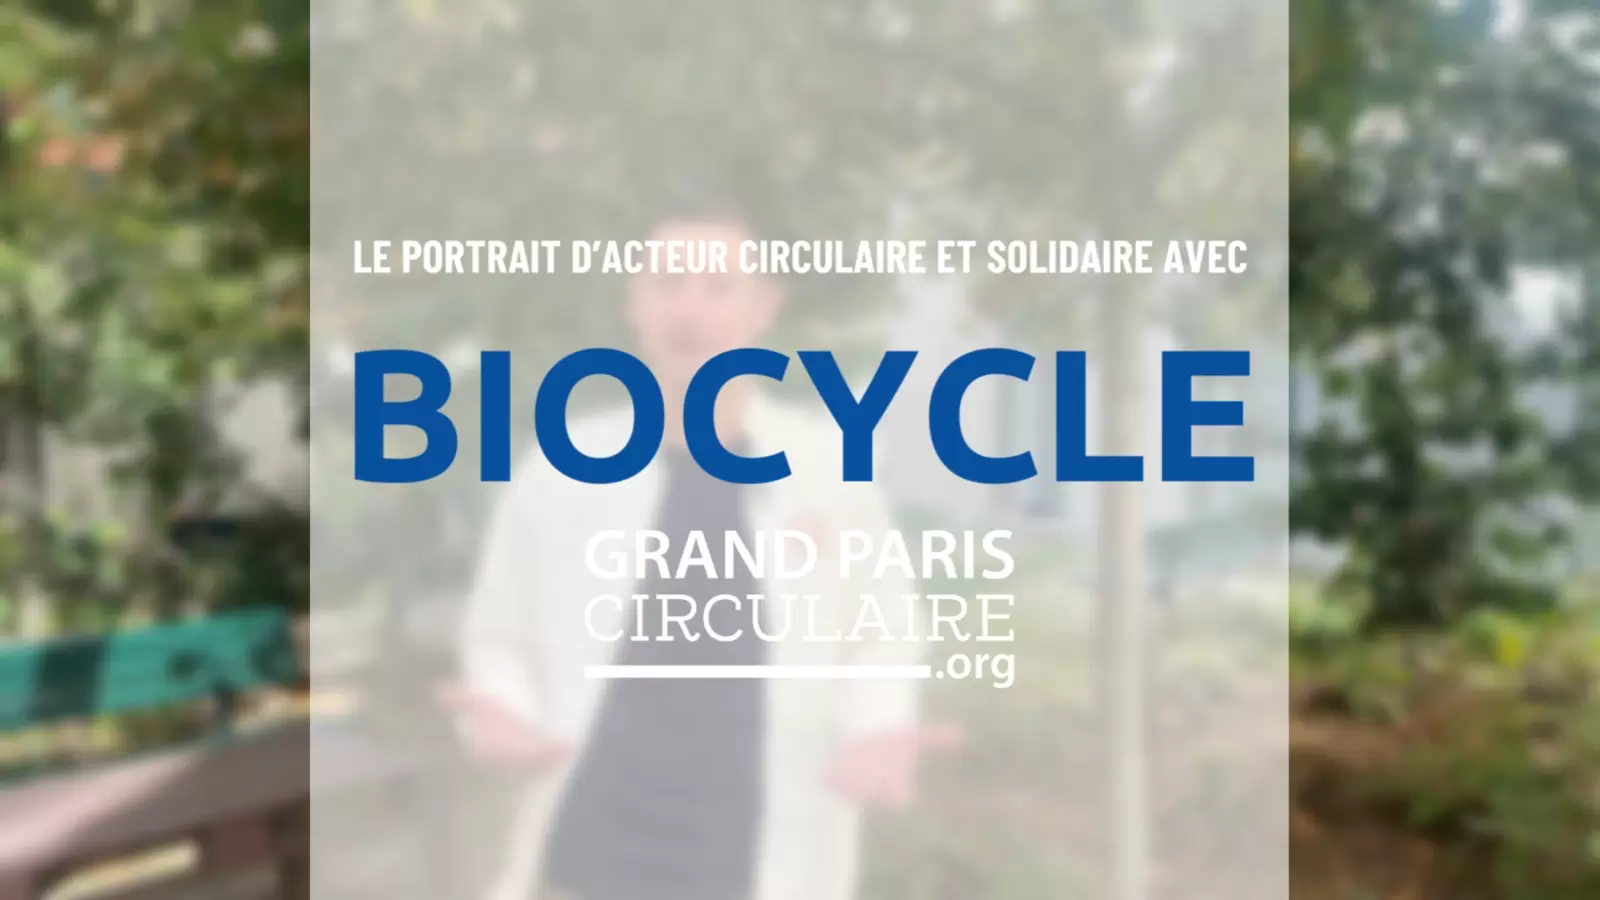 Portrait d'acteur circulaire et solidaire avec Jean-François Recco, fondateur et directeur de Biocycle